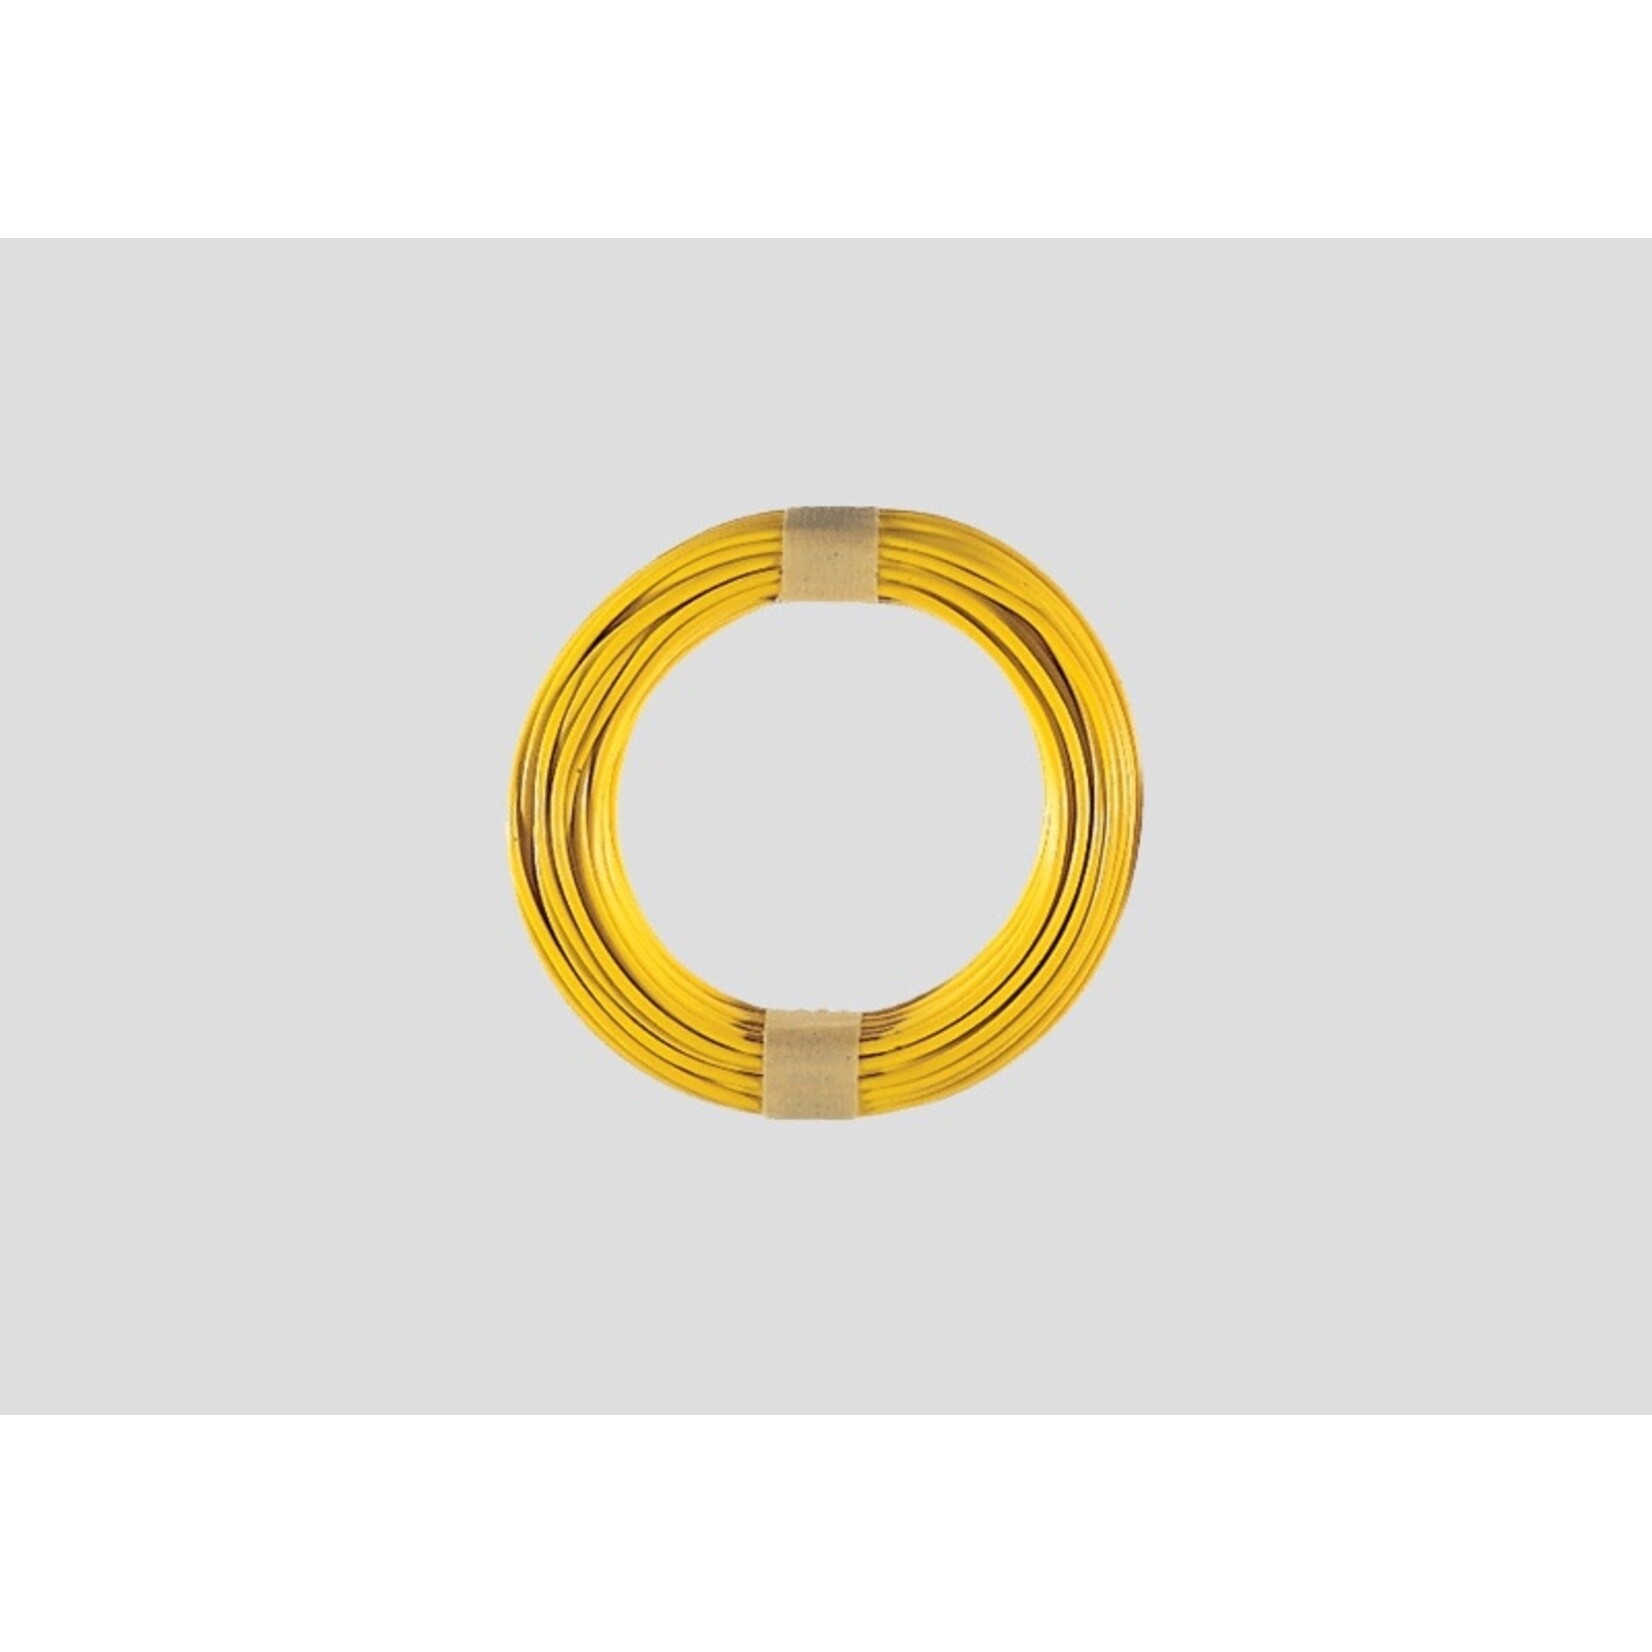 Märklin Märklin 7103 Yellow Wire 10m/33' 0.19 mm²/24AWG